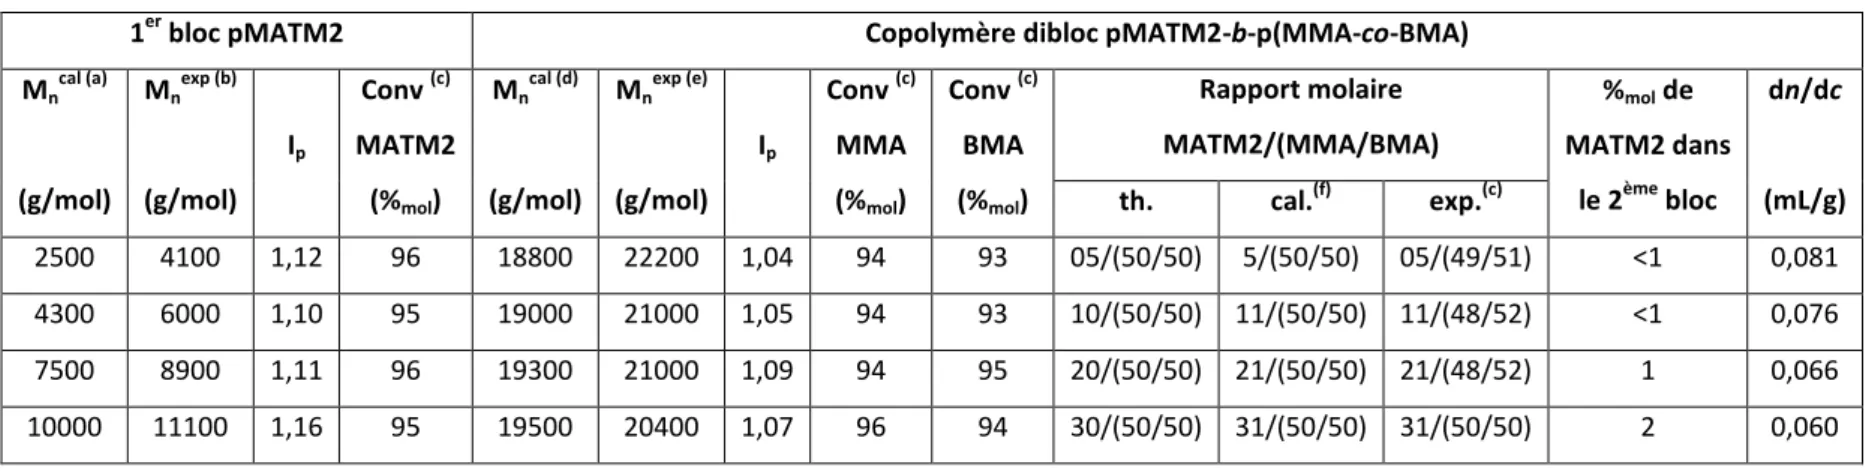 Tableau II-5 : Récapitulatif des synthèses de copolymères diblocs pMATM2-b-p(MMA-co-BMA) de masse molaire théorique M n =20000 g/mol